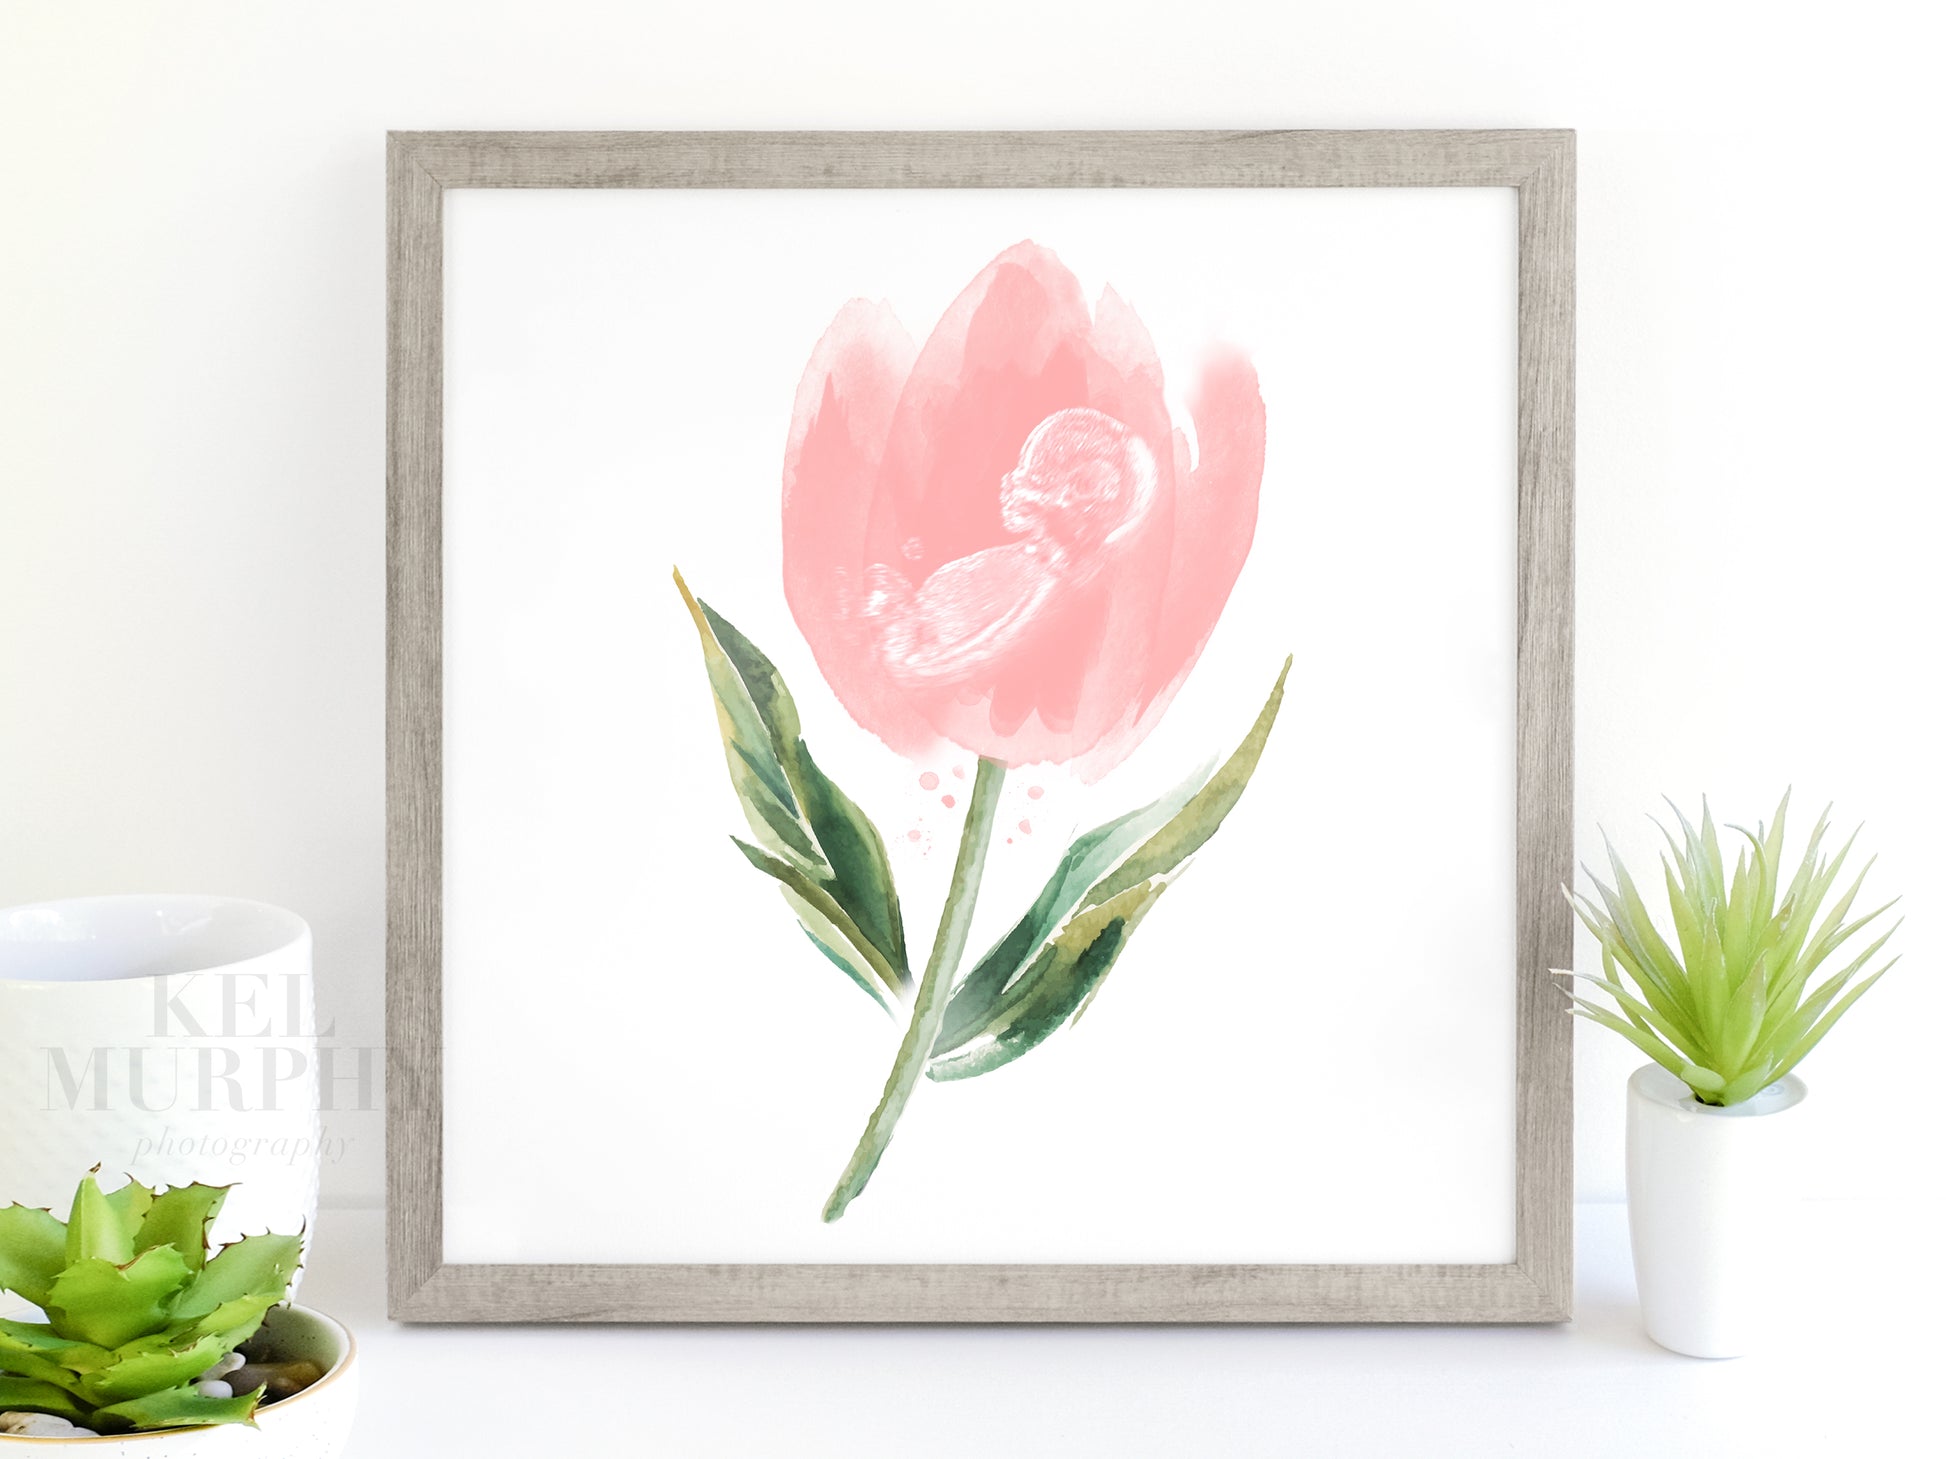 Tulip watercolor ultrasound art print baby keepsake new mom gift baby shower gift framed